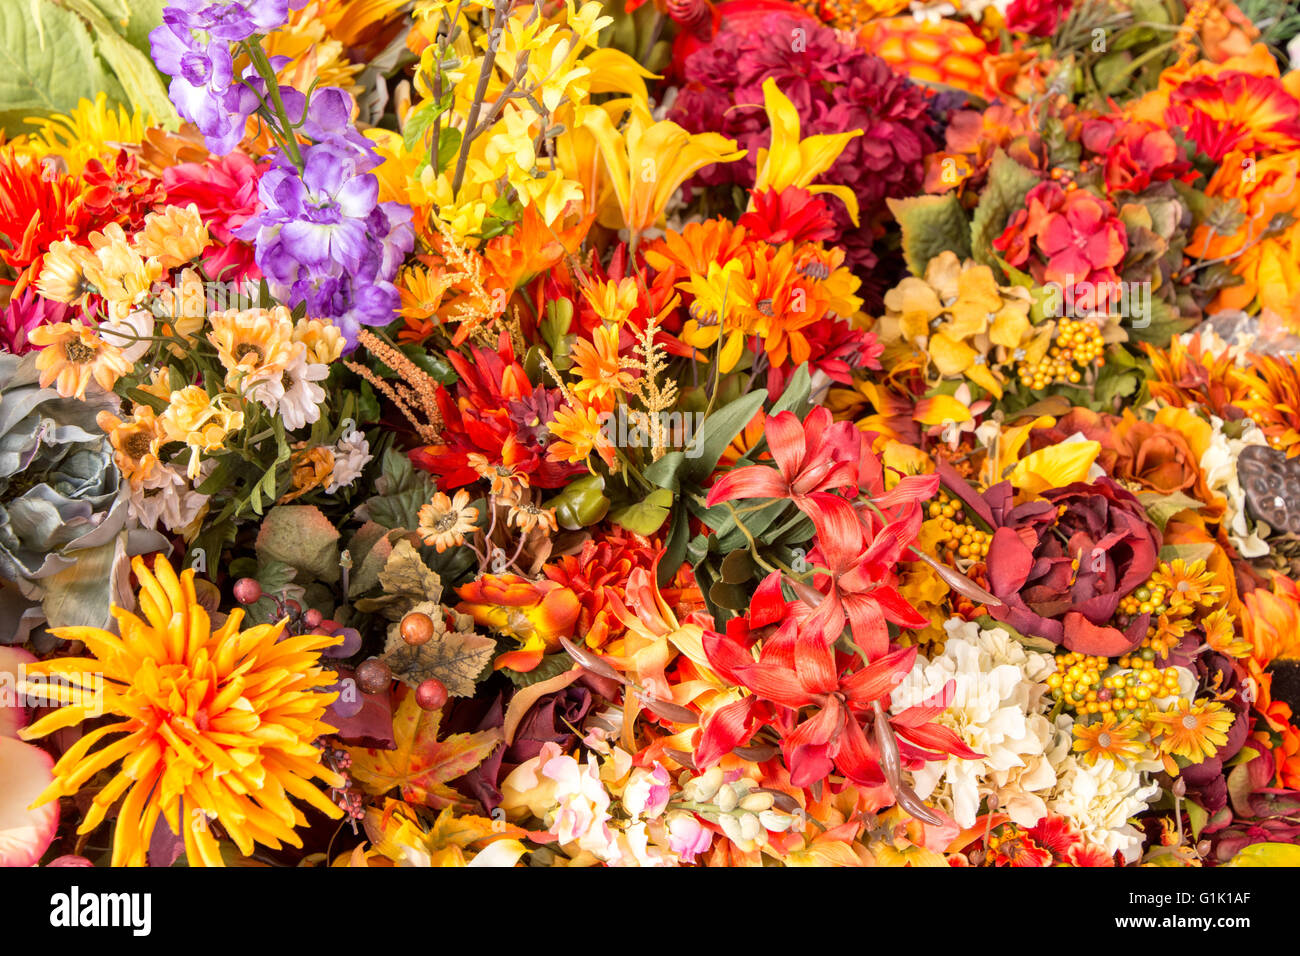 Grande grappe de fleurs aux couleurs éclatantes au cours du marché Banque D'Images